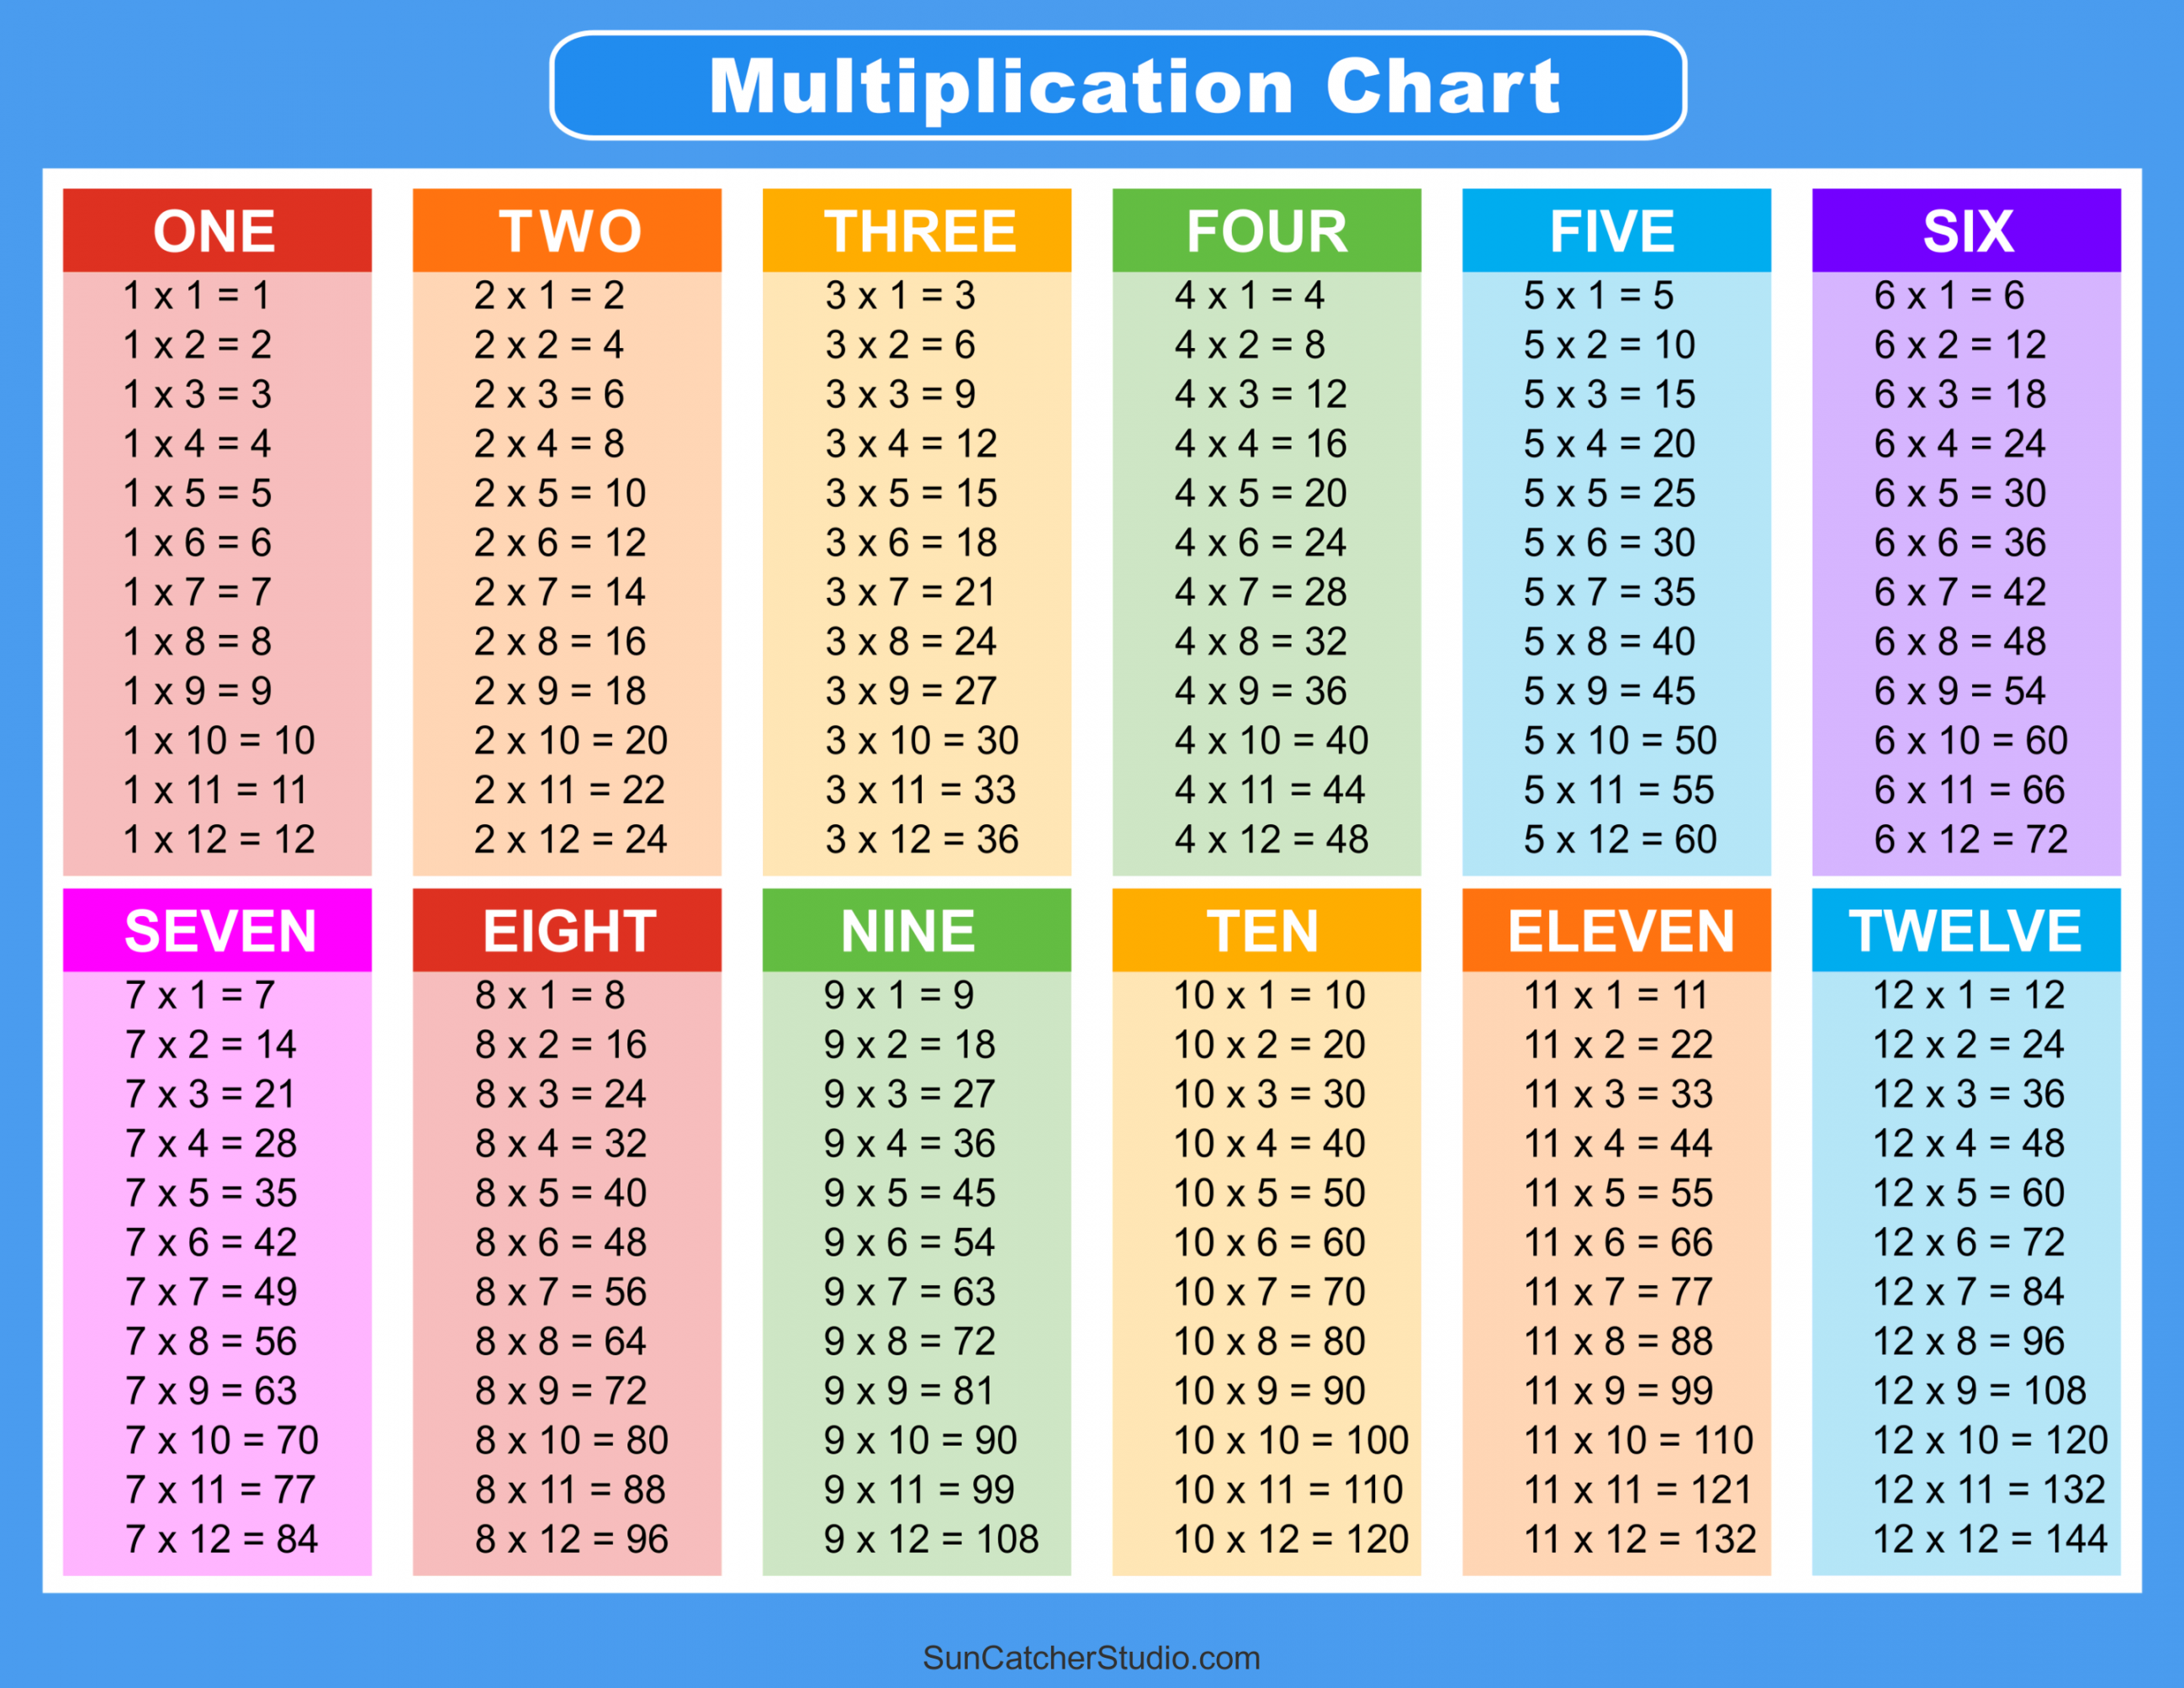 Free Multiplication Table Printable - Printable - Multiplication Charts (PDF): Free Printable Times Tables – DIY